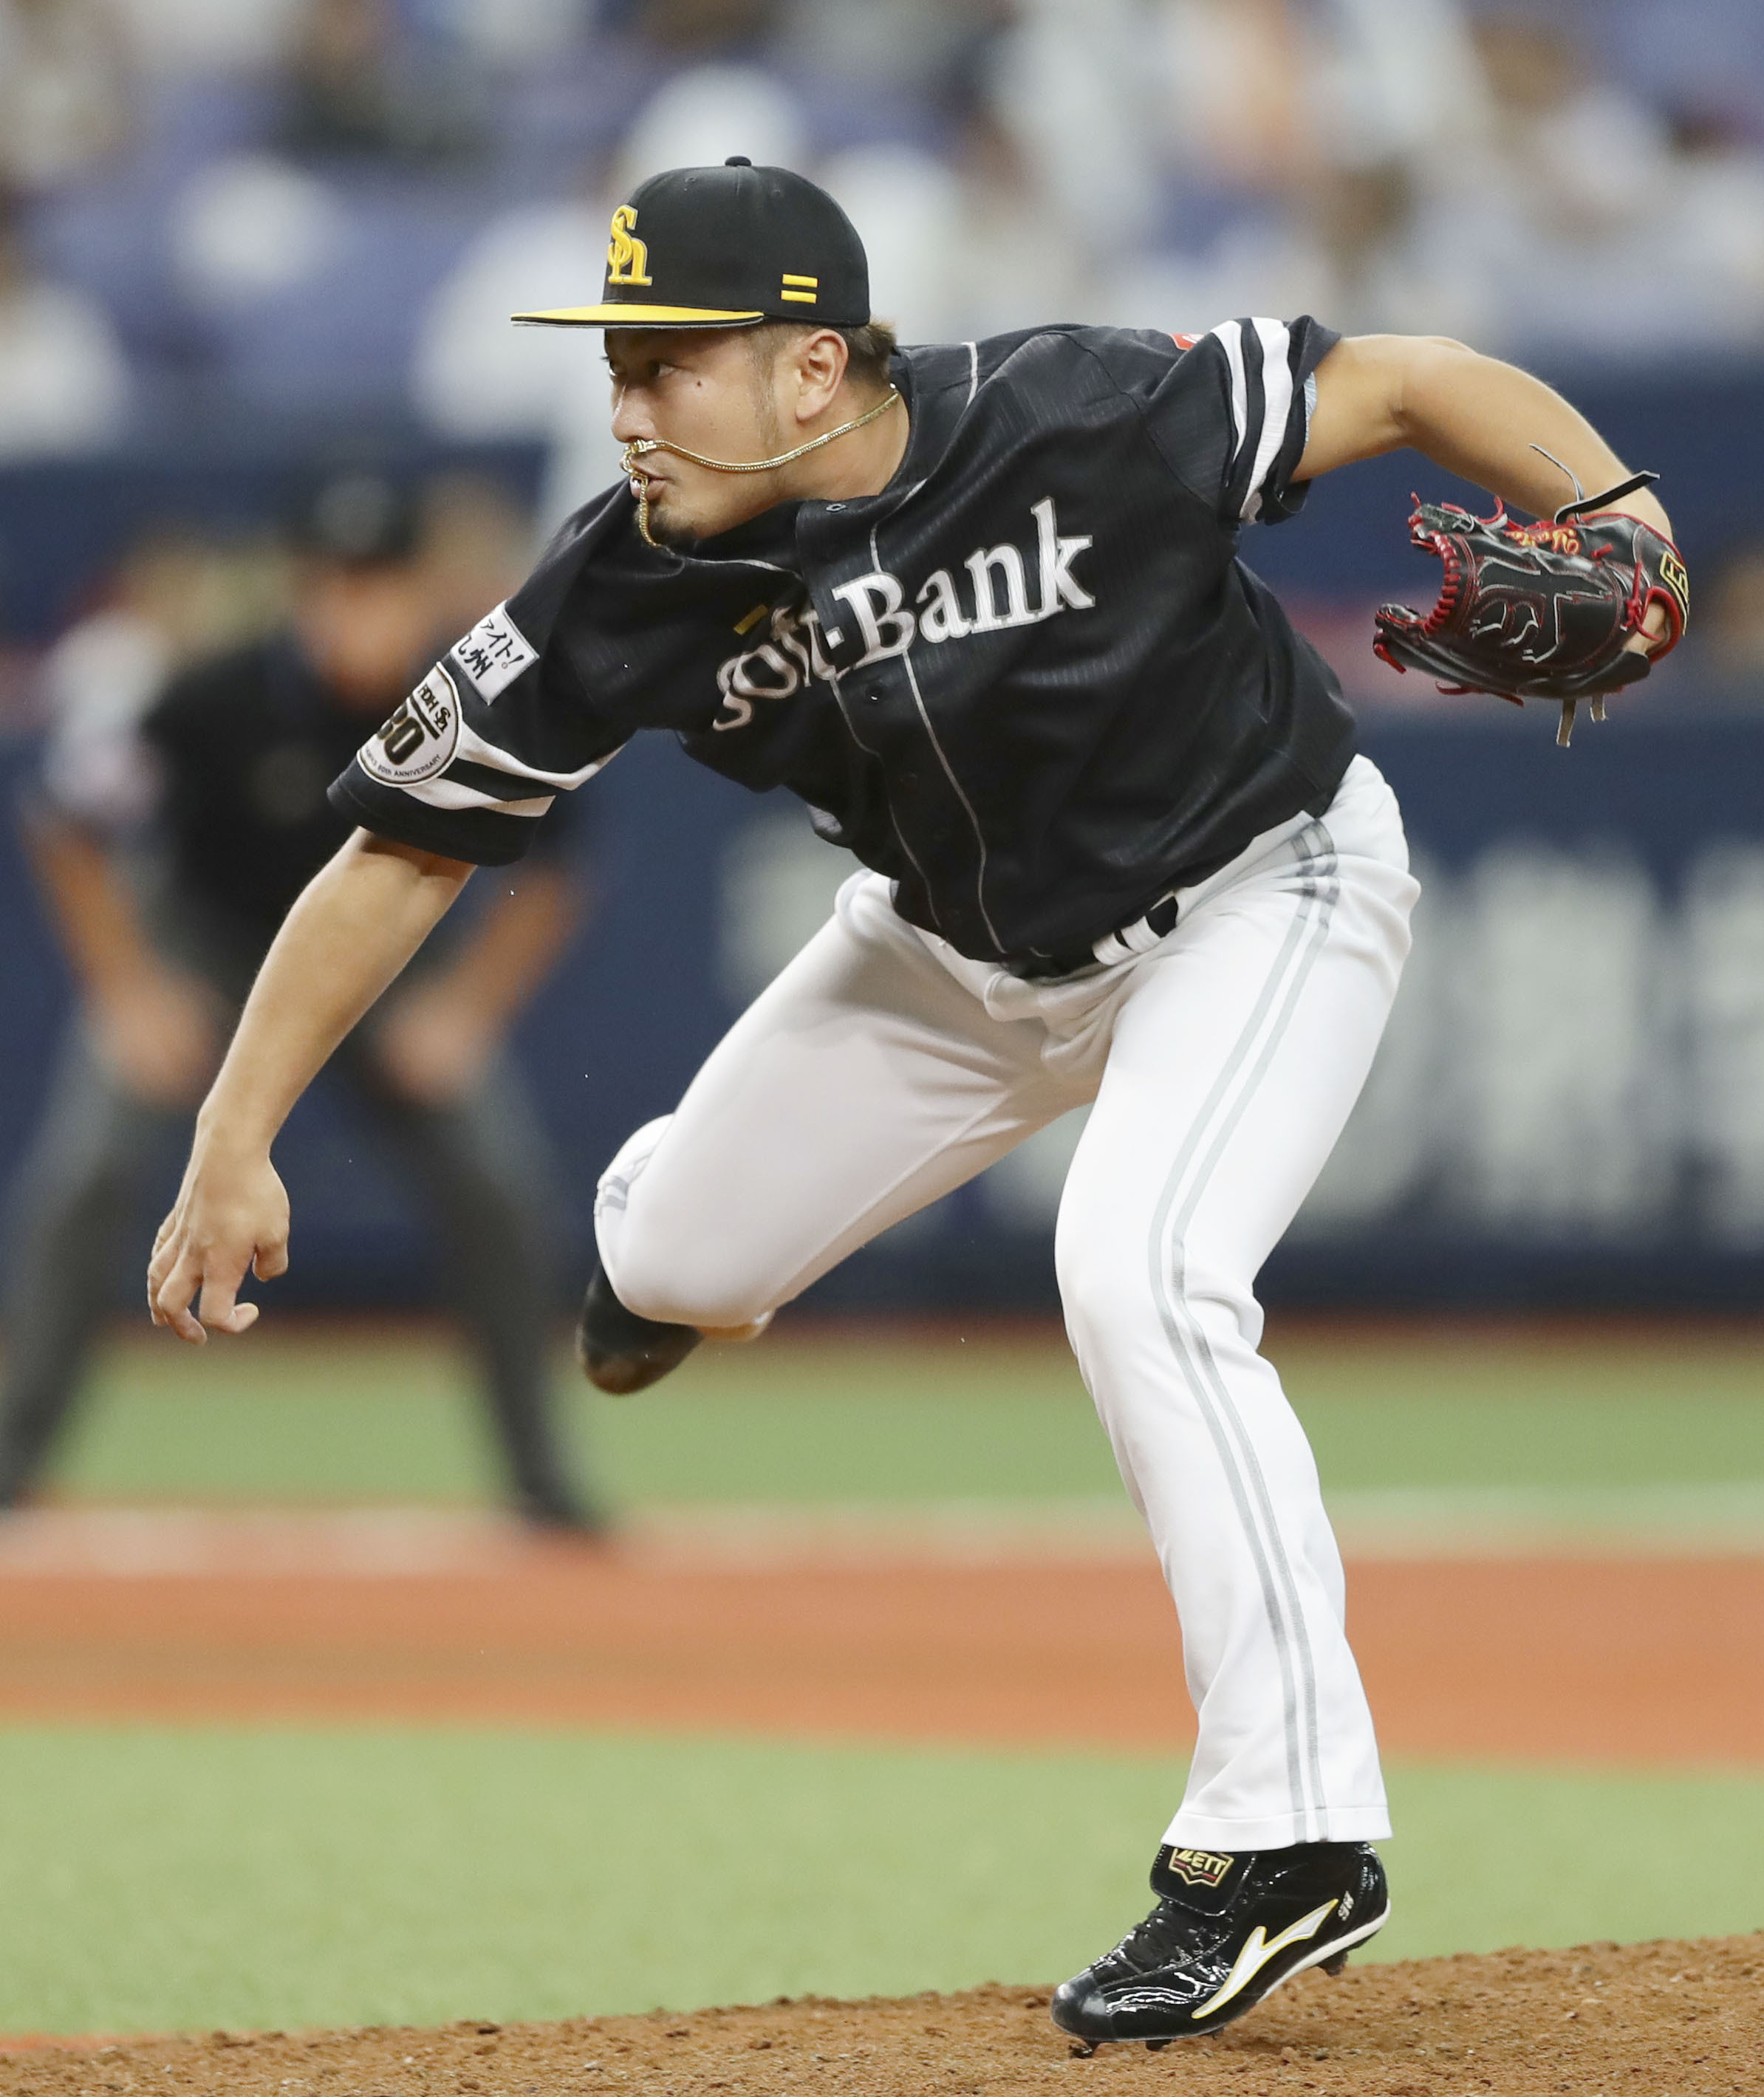 7試合7連続セーブの日本記録達成 福岡ソフトバンク 森がチームを7連勝に導く プロ野球 Baseball Gate